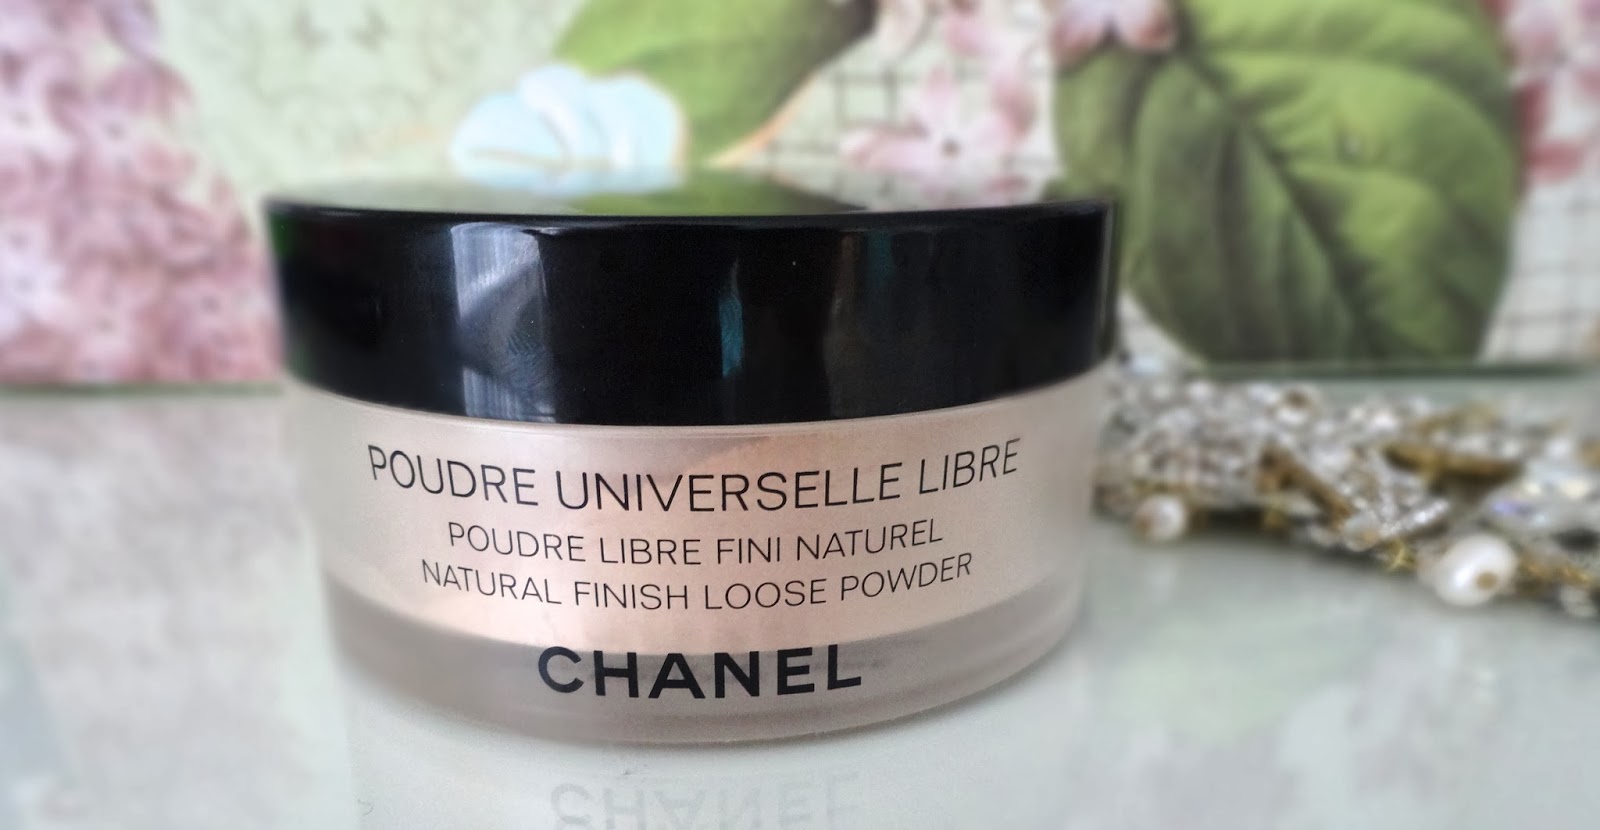 Let's makeup belle: Chanel : Poudre Universelle Libre Natural